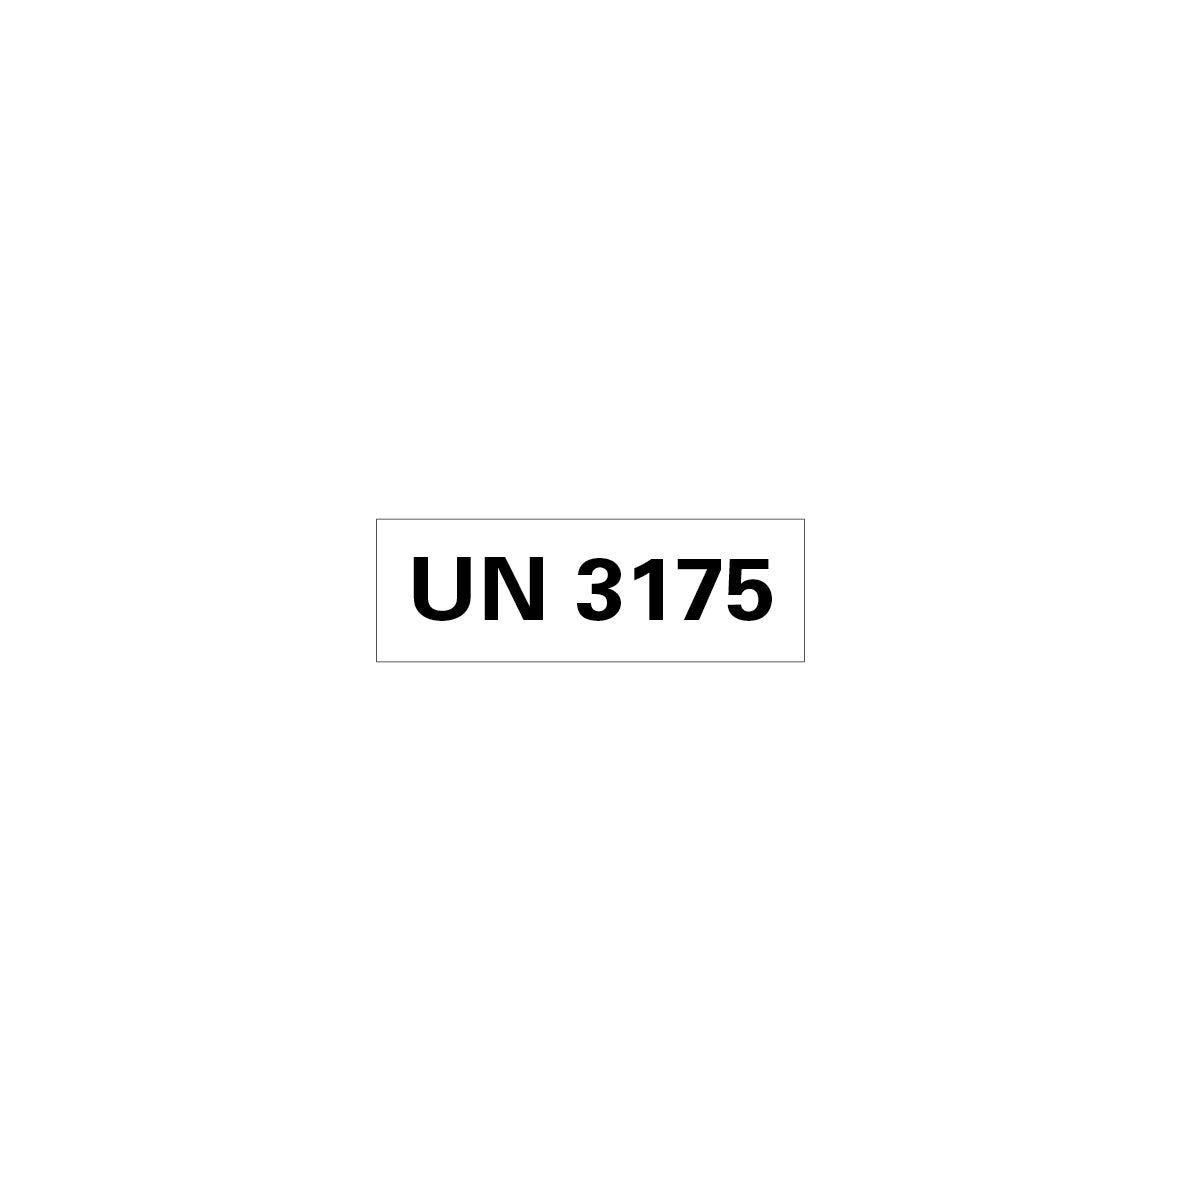 Gefahrgut UN, 5.0160.1, 150 x 50 mm, Stk., UN 3175  (feste Stoffe die entzündbare Stoffe enthalten), auf Bogen, VE 10 Stk.